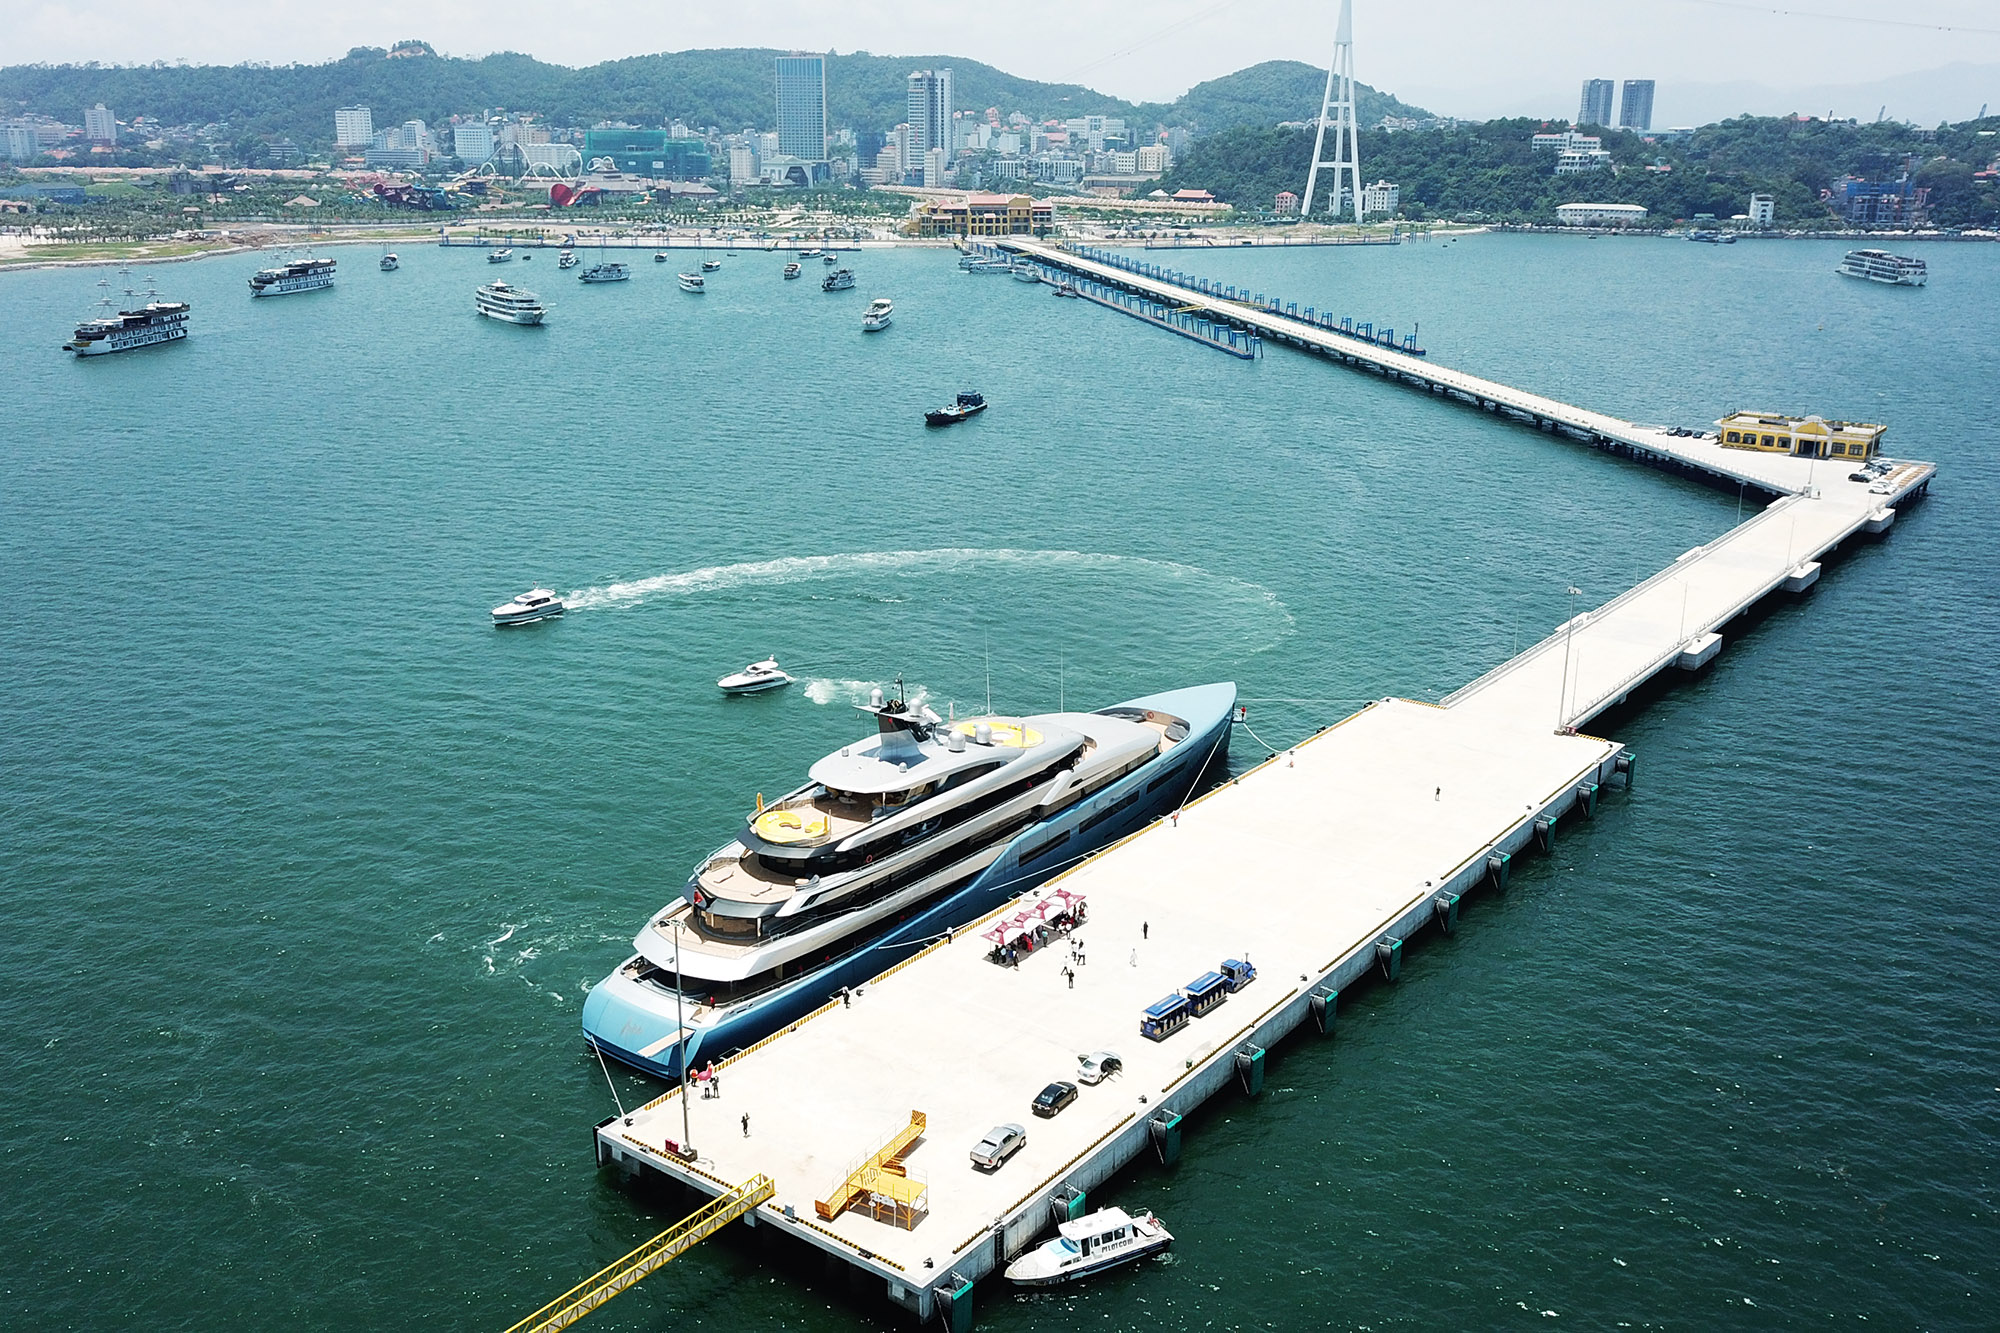 ảng tàu khách quốc tế Hòn Gai hiện là cảng tàu chuyên biệt duy nhất trong nước, đang khai thác các tuyến tàu biển quốc tế và tàu khách thủy nội địa tham quan Vịnh Hạ Long.